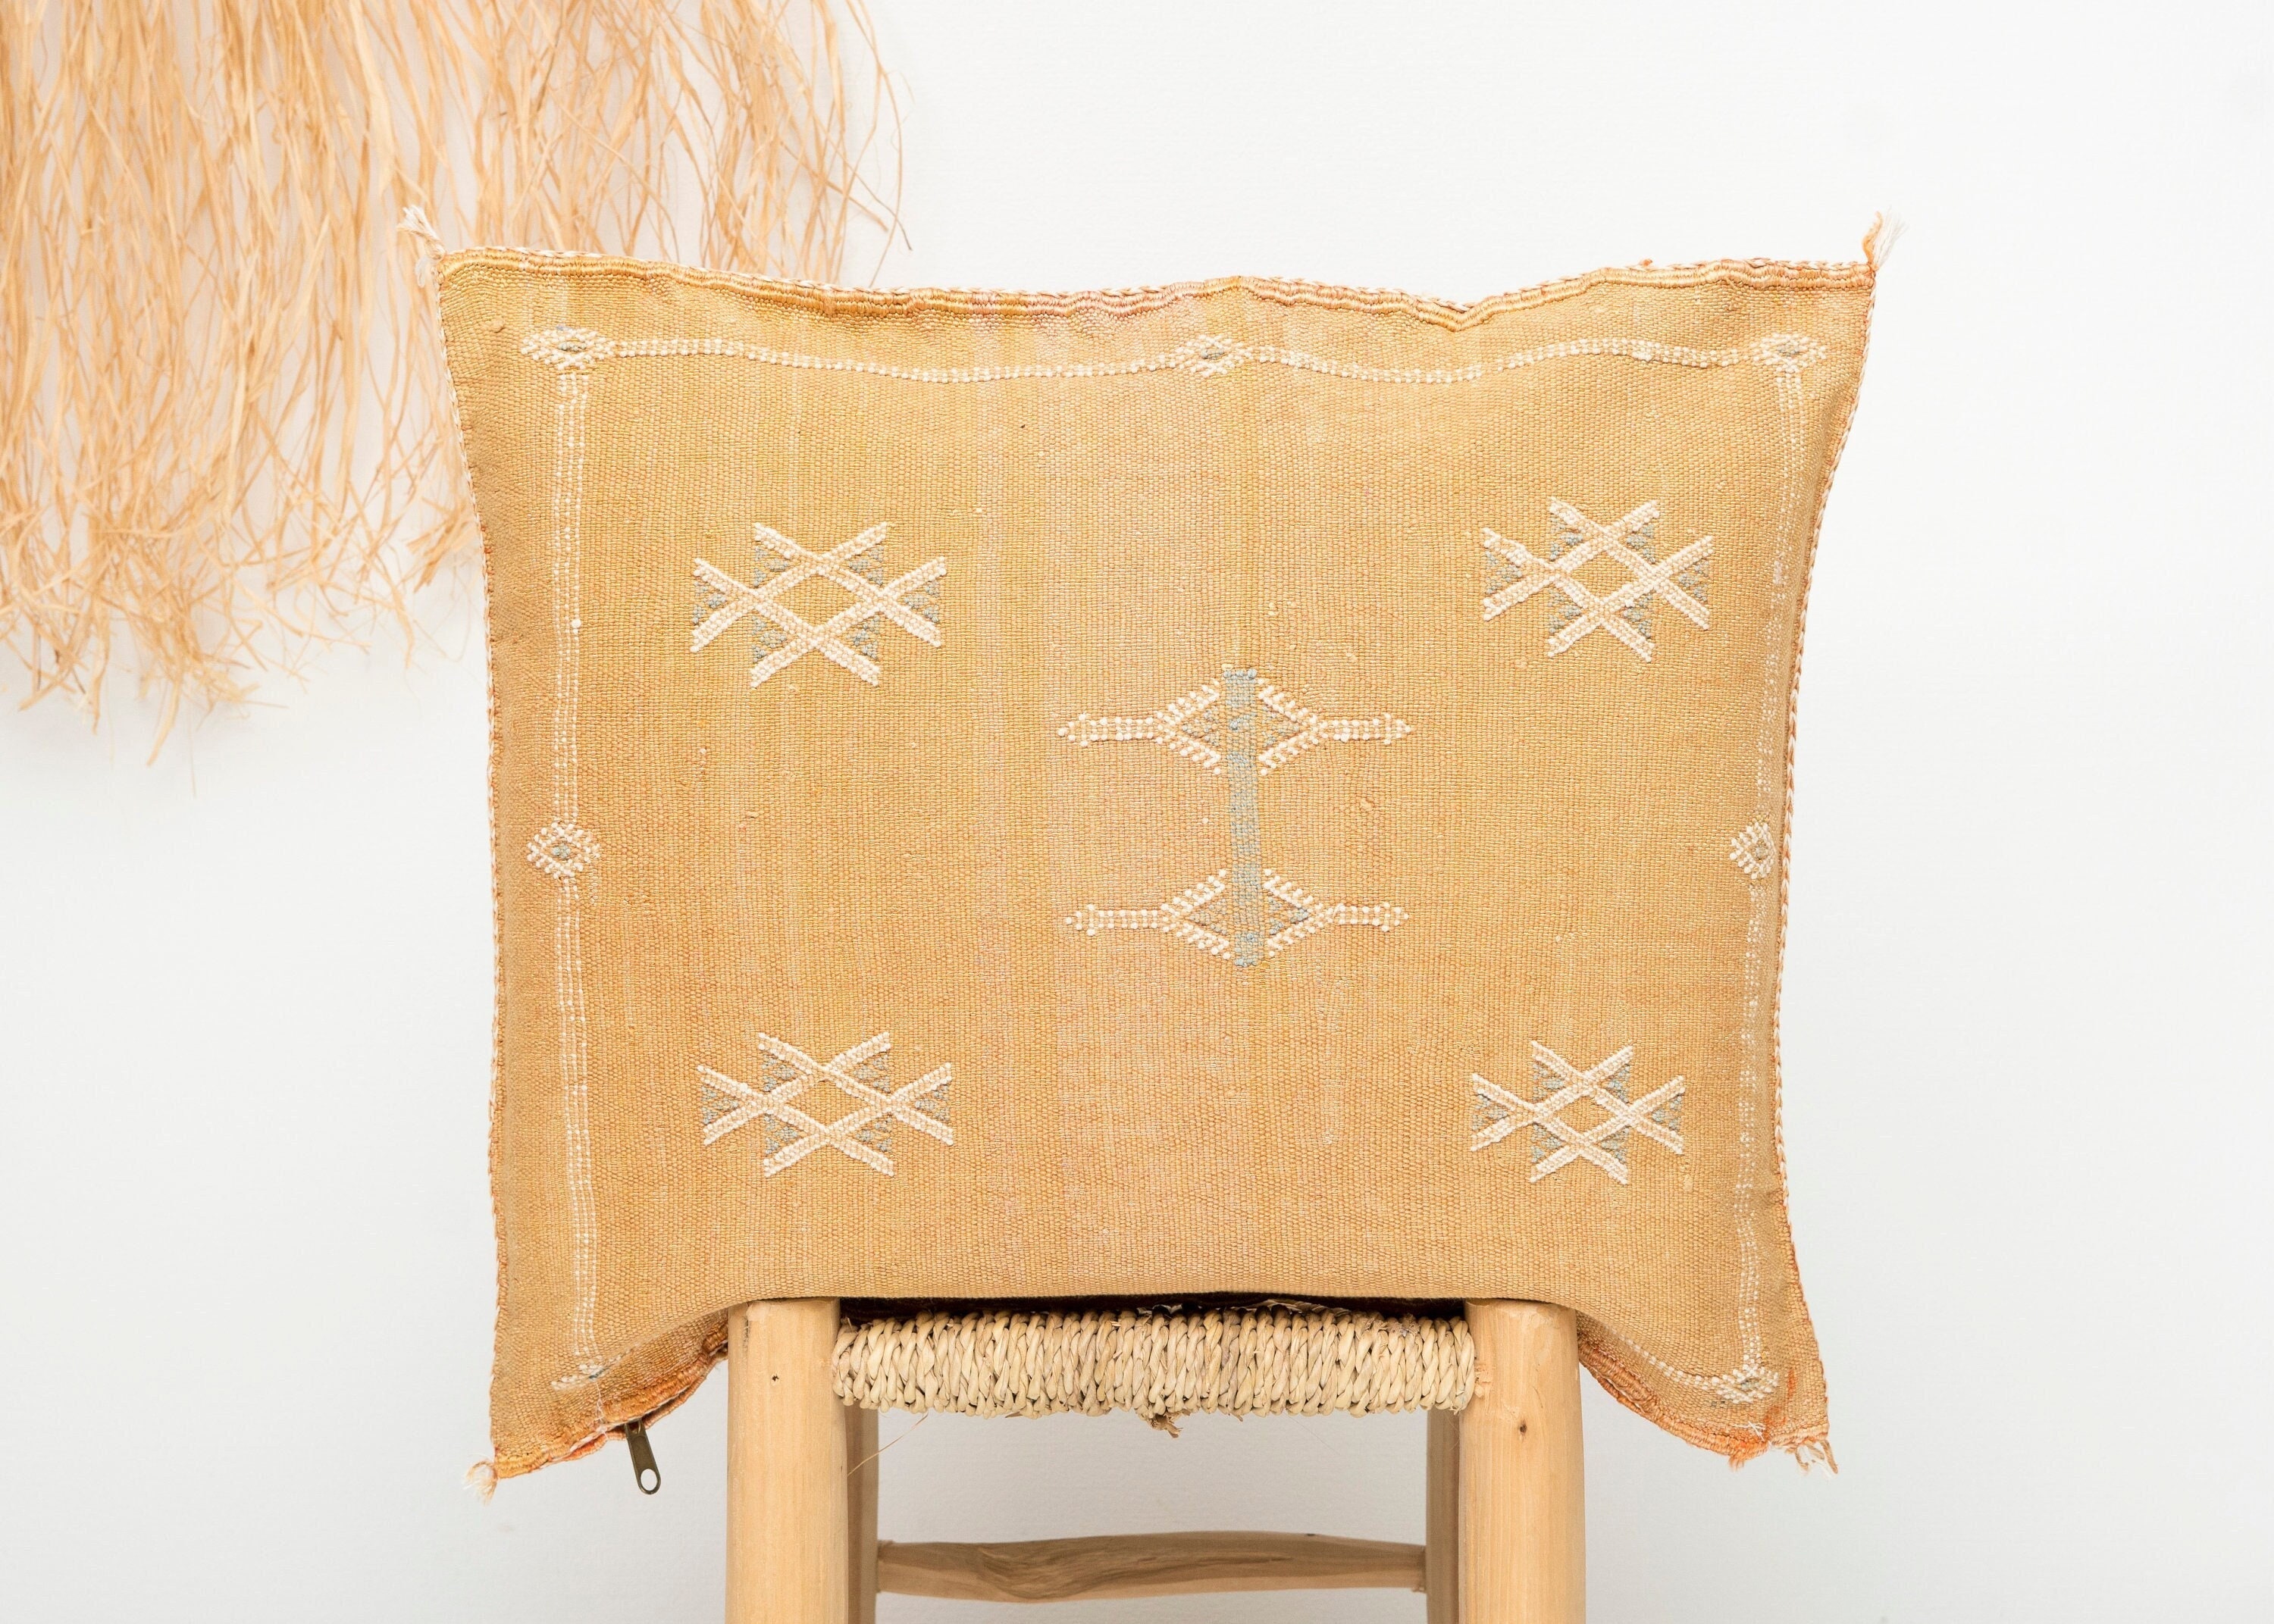 oreiller lombaire en soie de cactus orange clair/oreiller marocain coussin boho lit décoratif berbère no.323